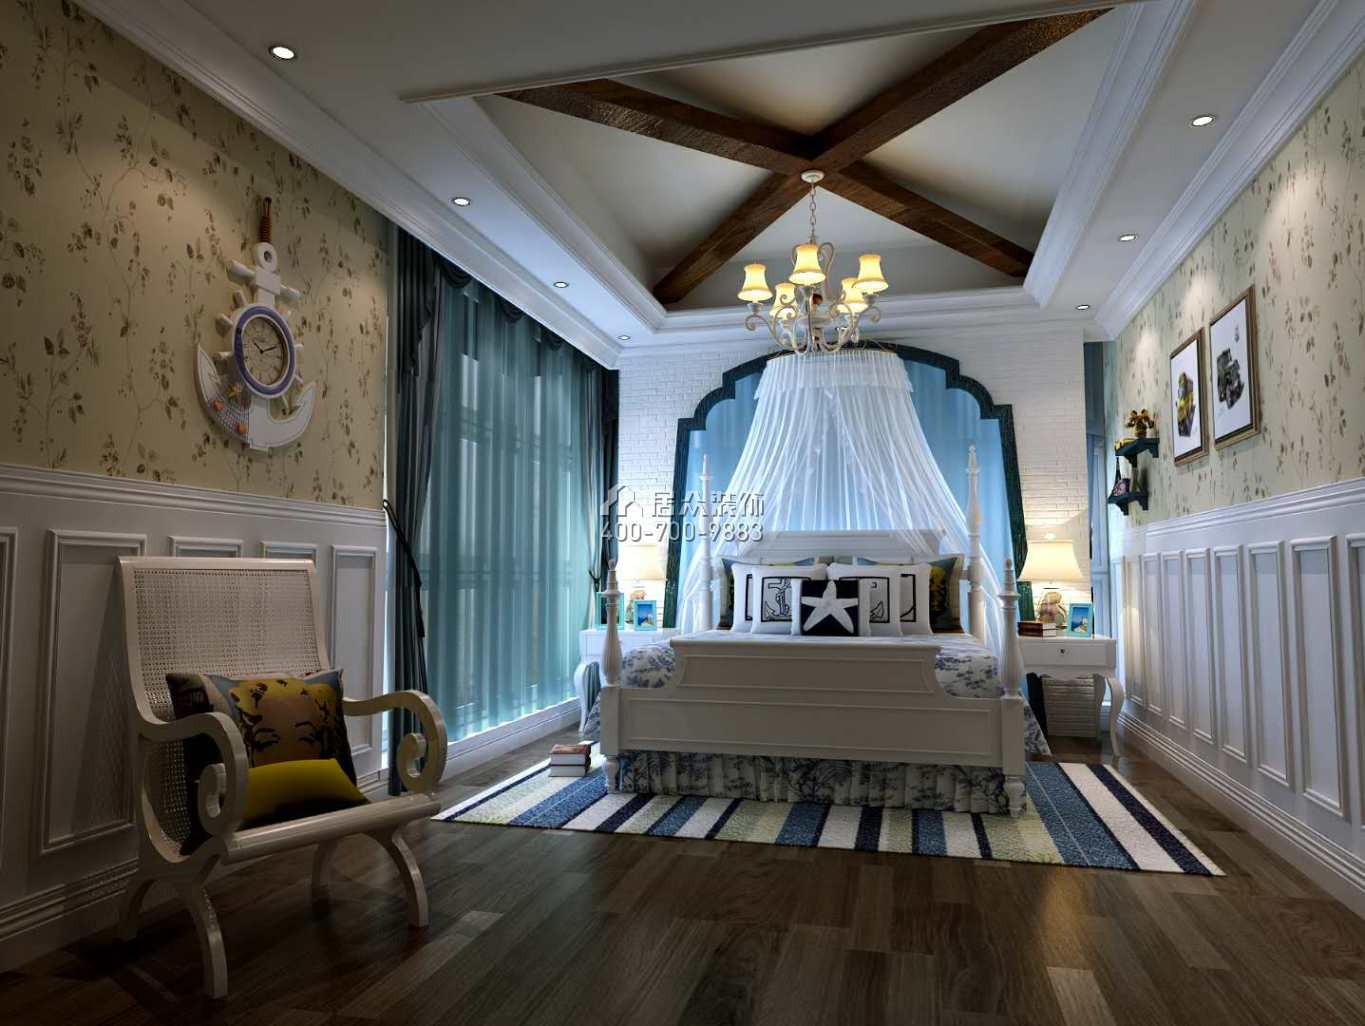 龍吟水榭400平方米美式風格別墅戶型臥室裝修效果圖